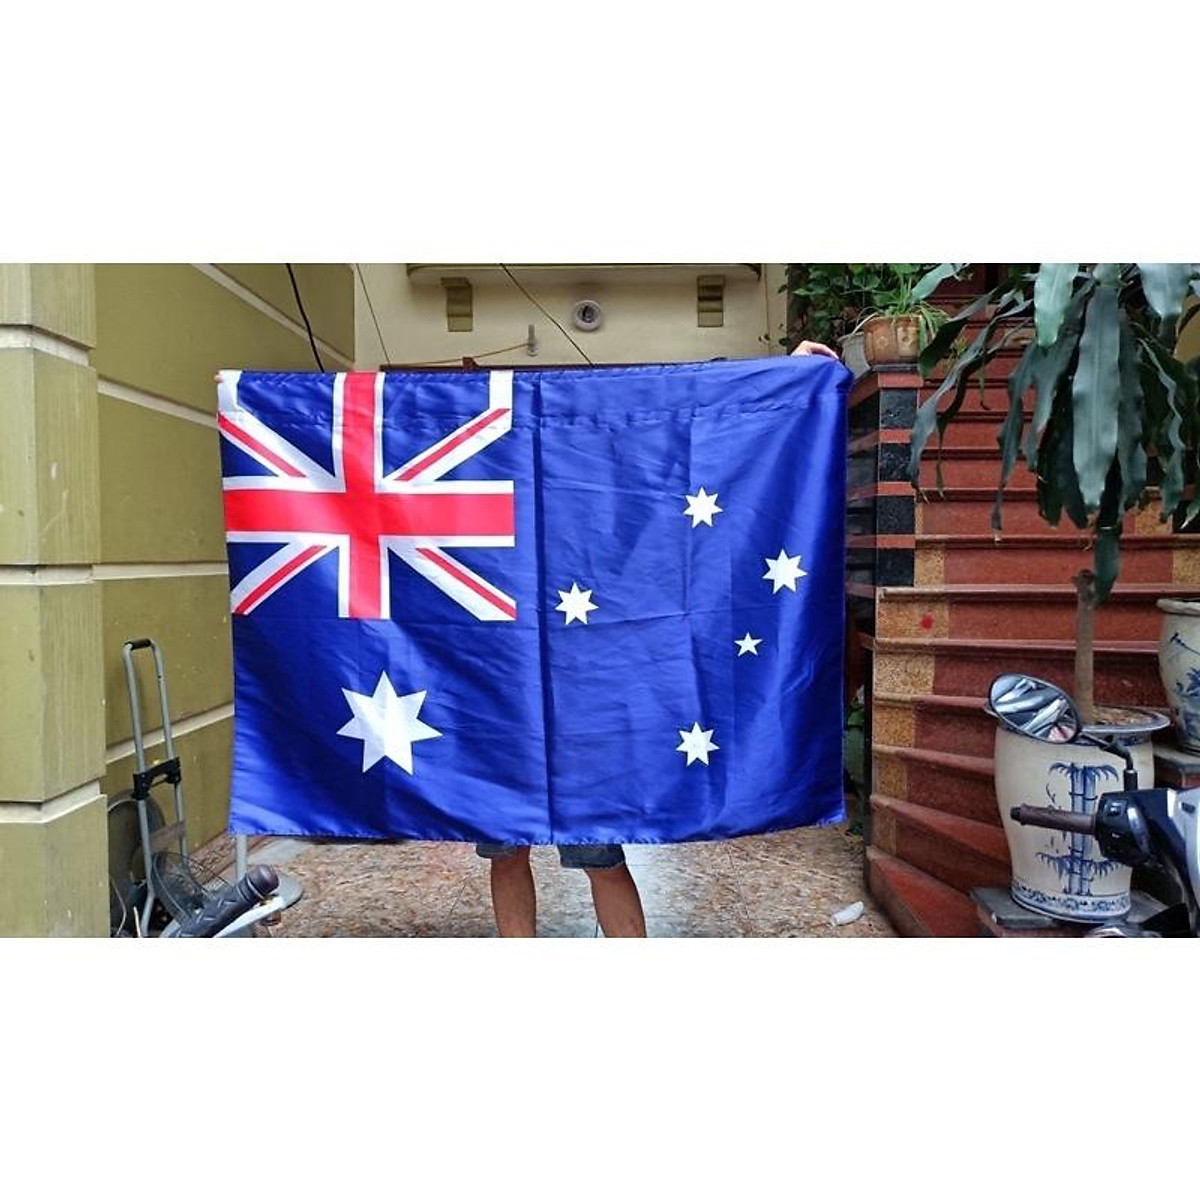 Cờ Úc 3D: Hãy chiêm ngưỡng vẻ đẹp toát lên từ cờ Úc 3D, tạo nên sức hấp dẫn đặc biệt cho bất cứ không gian nào. Với kỹ thuật in ấn chất lượng cao, bộ cờ Úc 3D sẽ mang đến cho bạn trải nghiệm sống động và đầy ấn tượng.